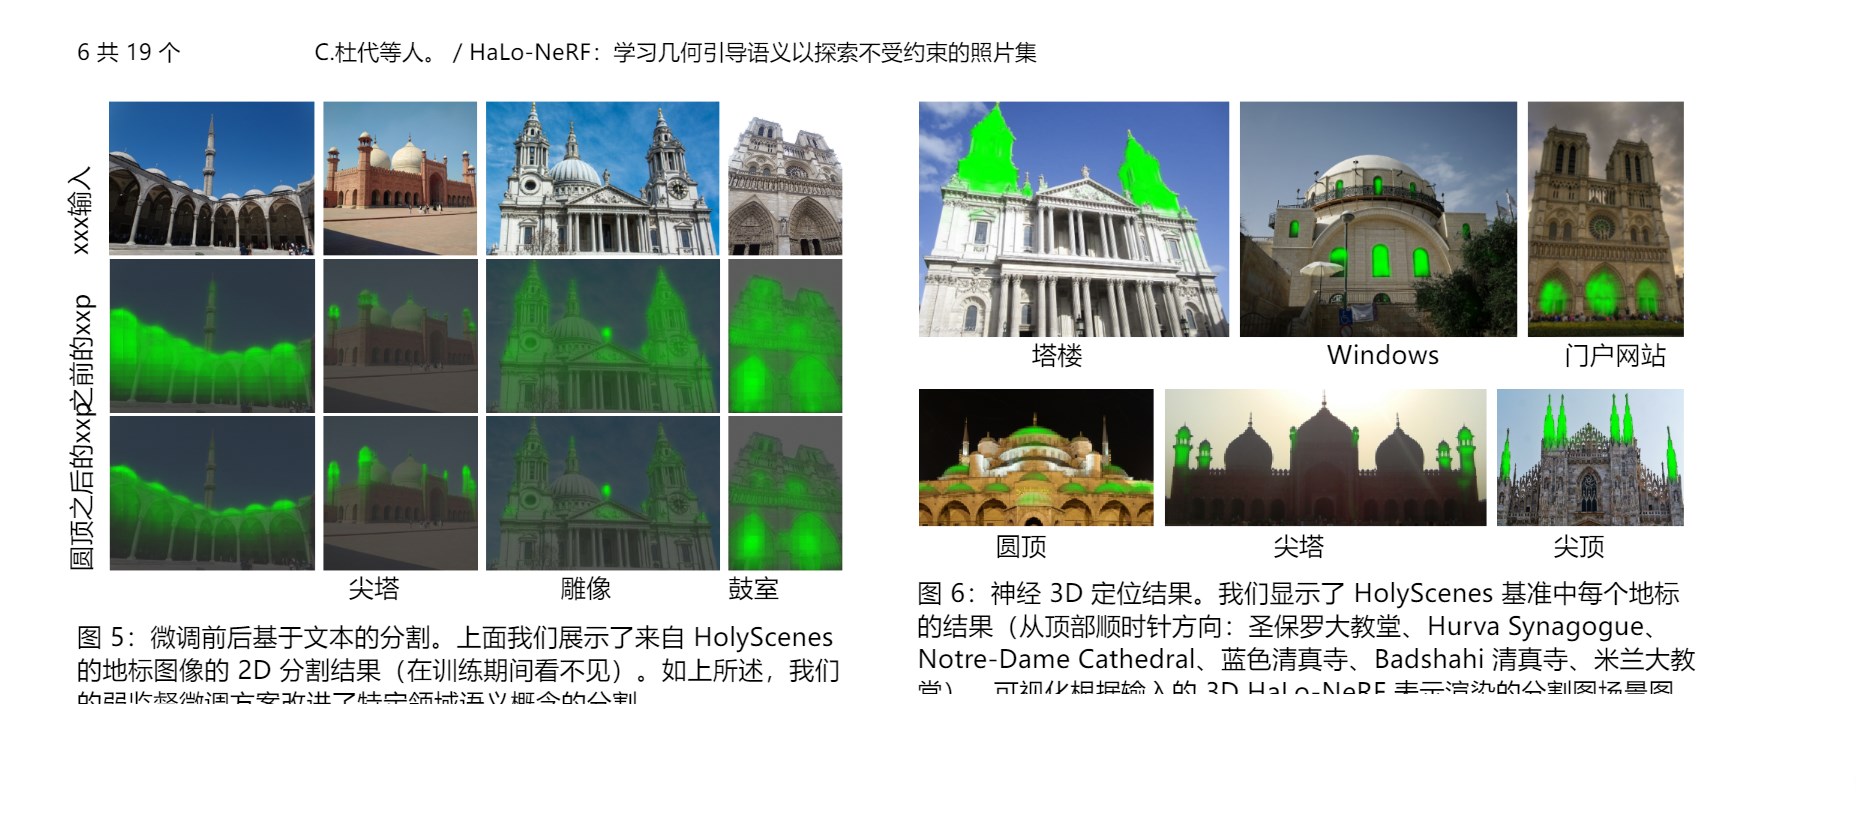 HaLo-NeRF：利用视觉和语言模型对场景的精准定位和细粒度语义理解